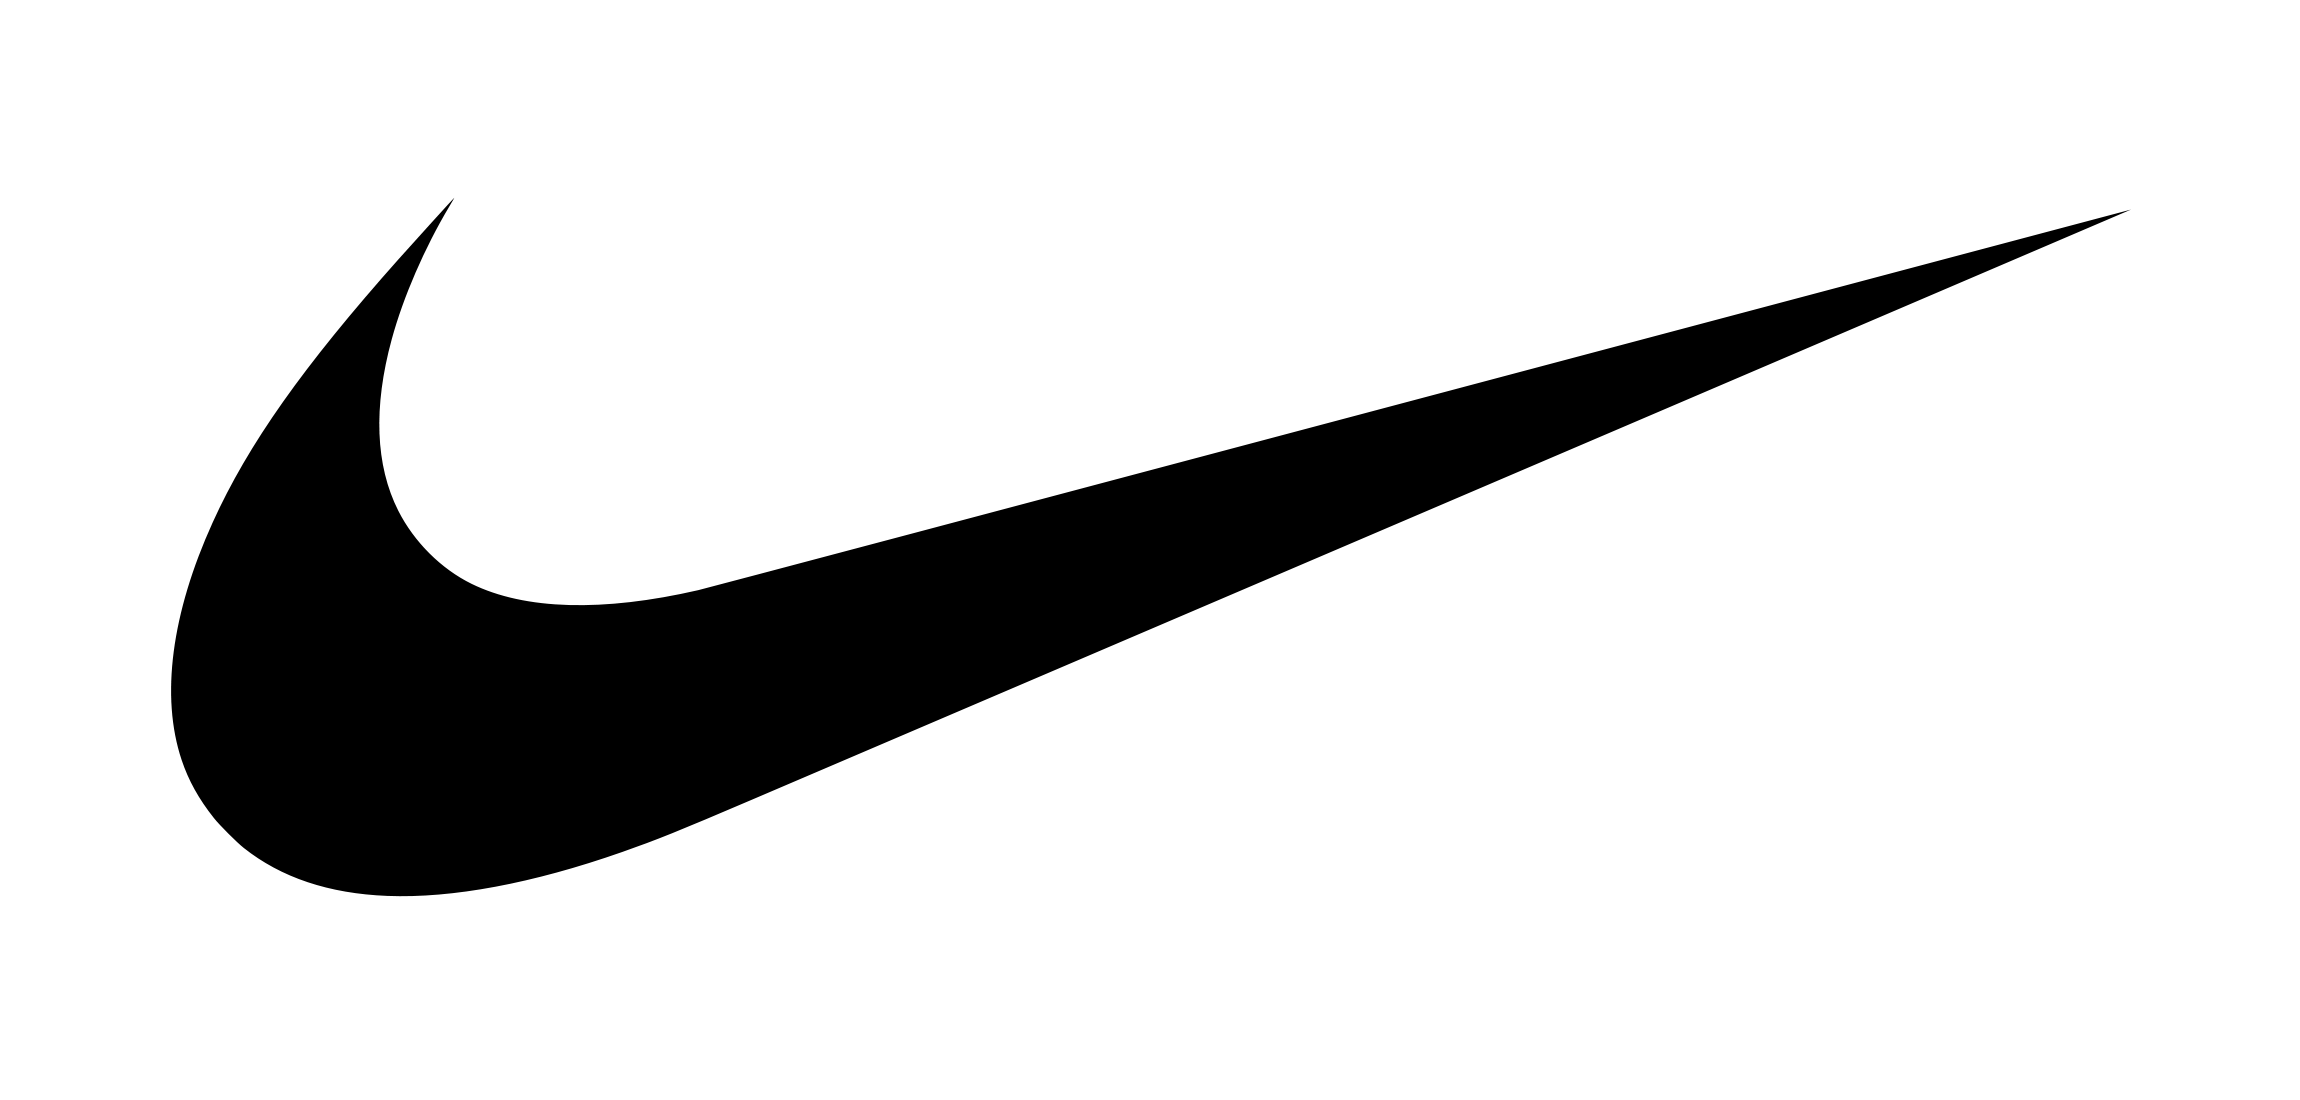 White Nike Logo - Nike Logo PNG Images Free Download Logo Image - Free Logo Png